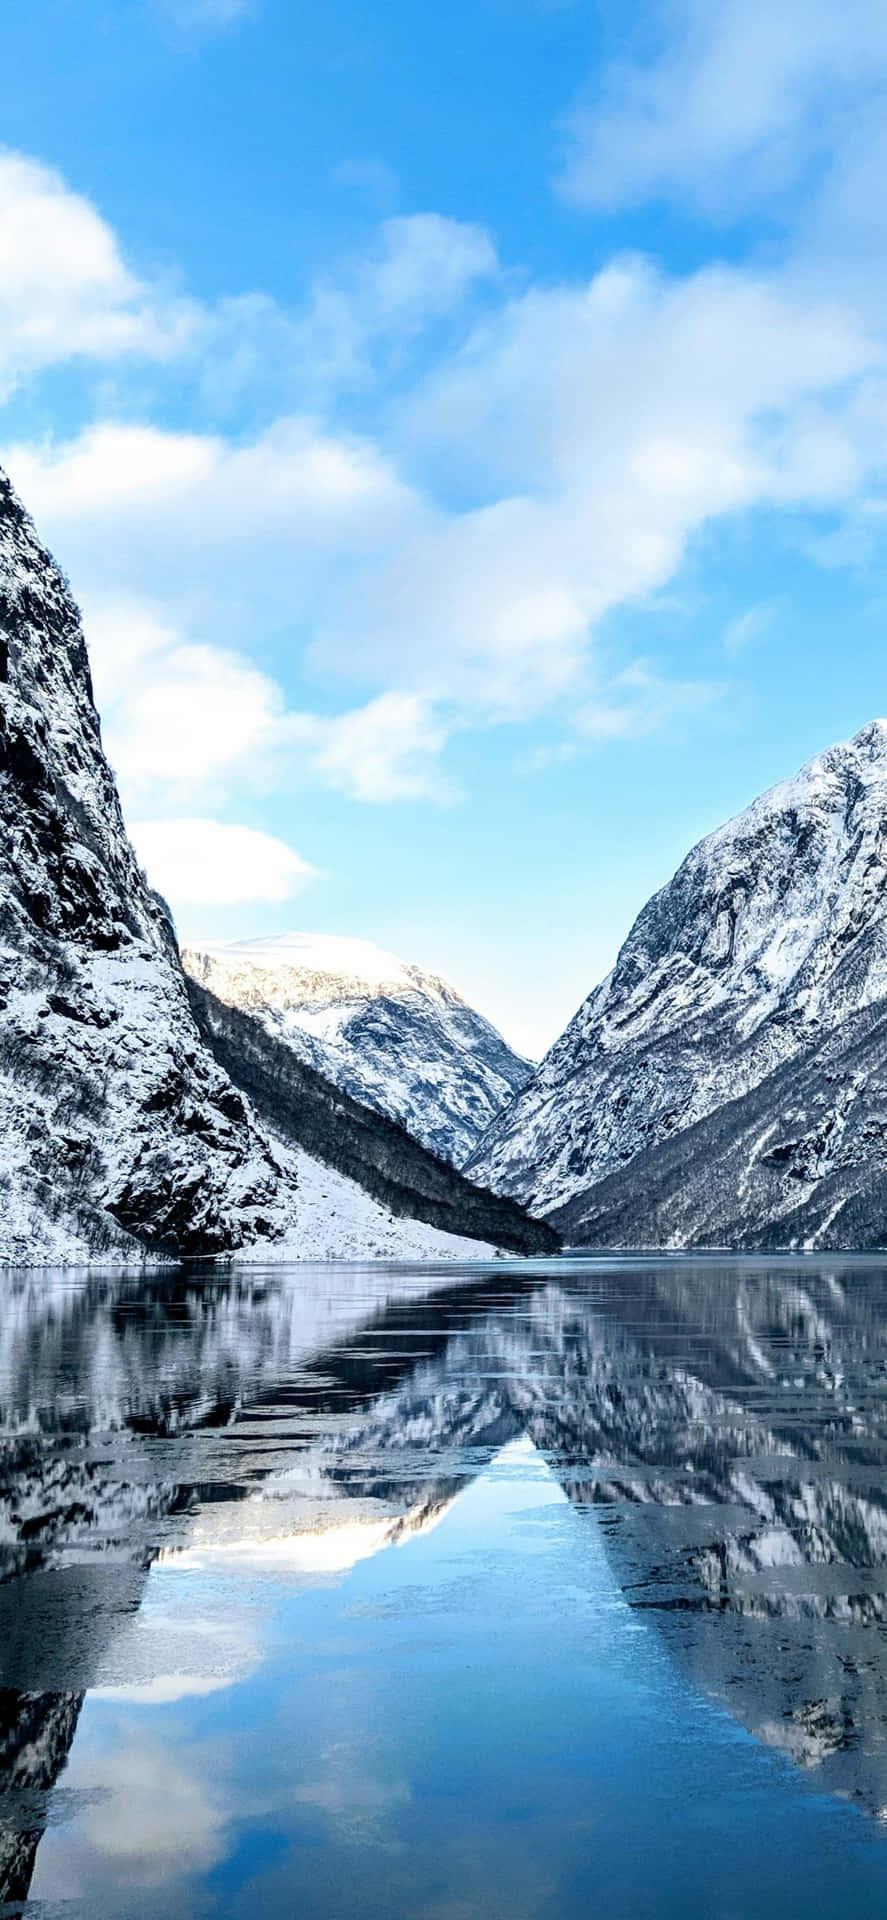 Willkommenin Der Atemberaubenden Schönheit Norwegens